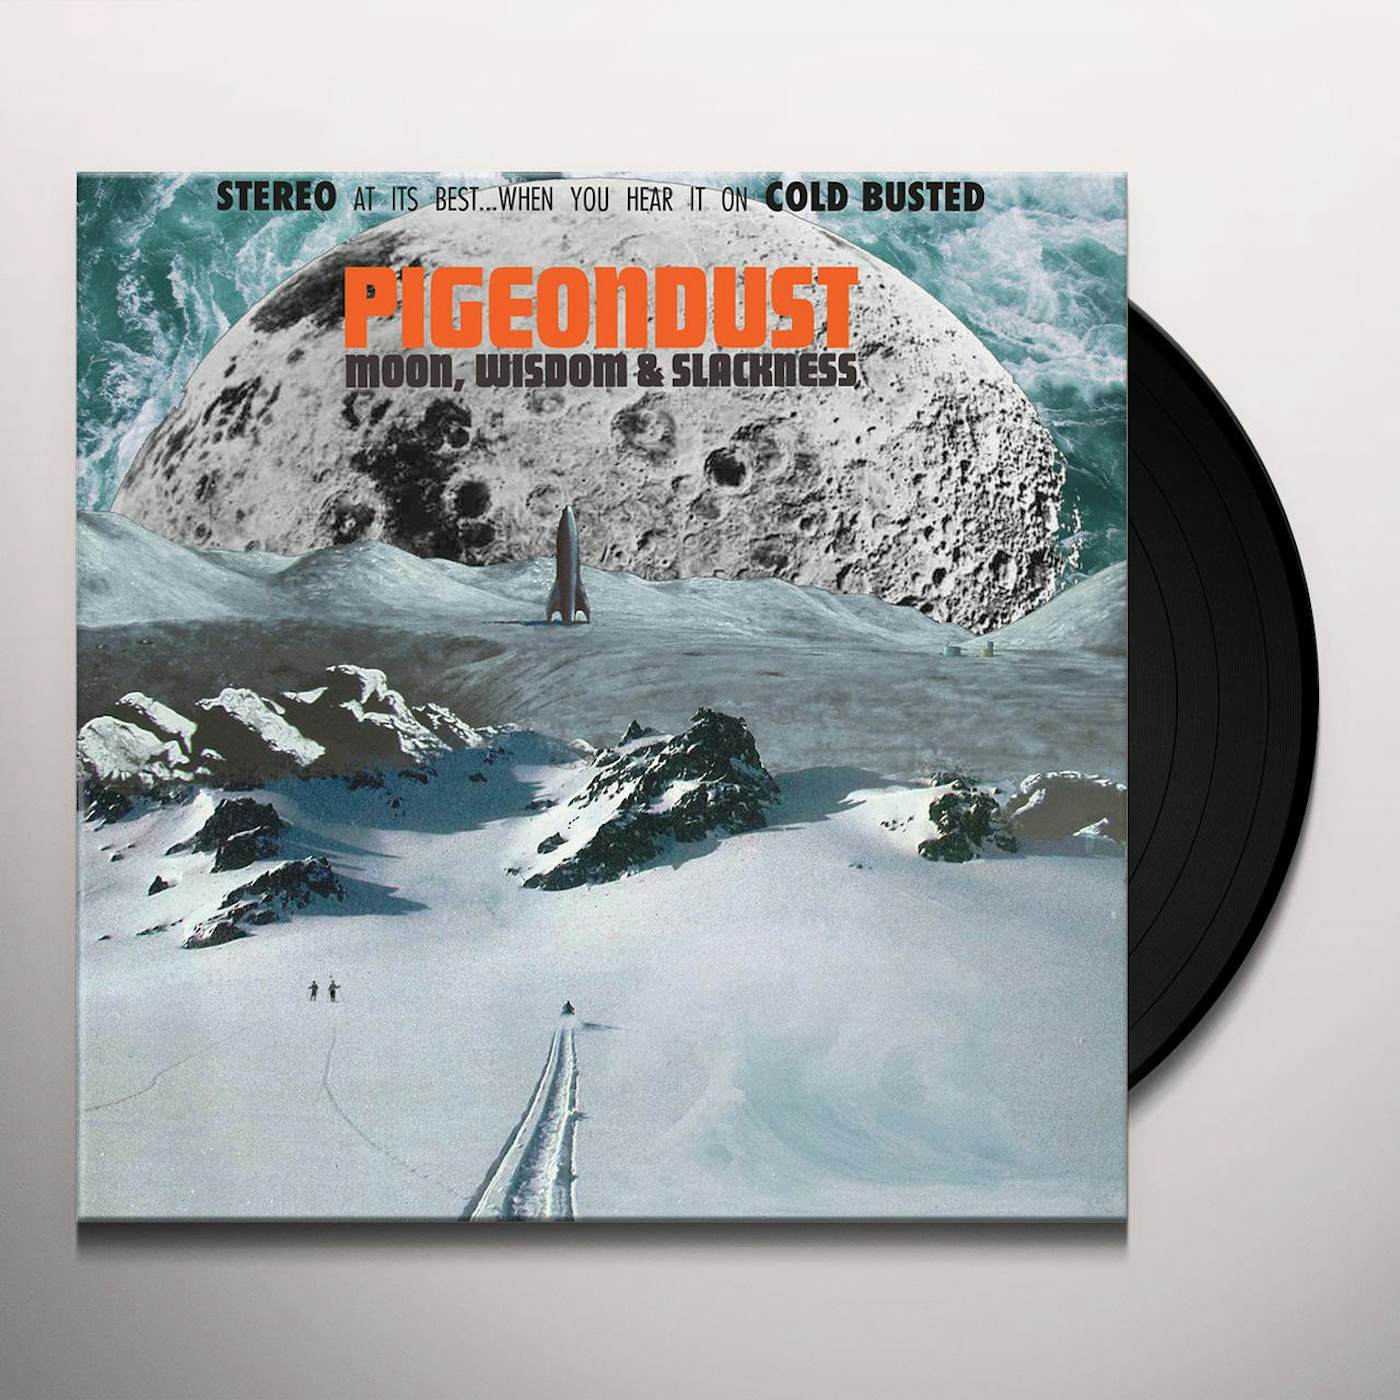 Pigeondust MOON WISDOM & SLACKNESS Vinyl Record